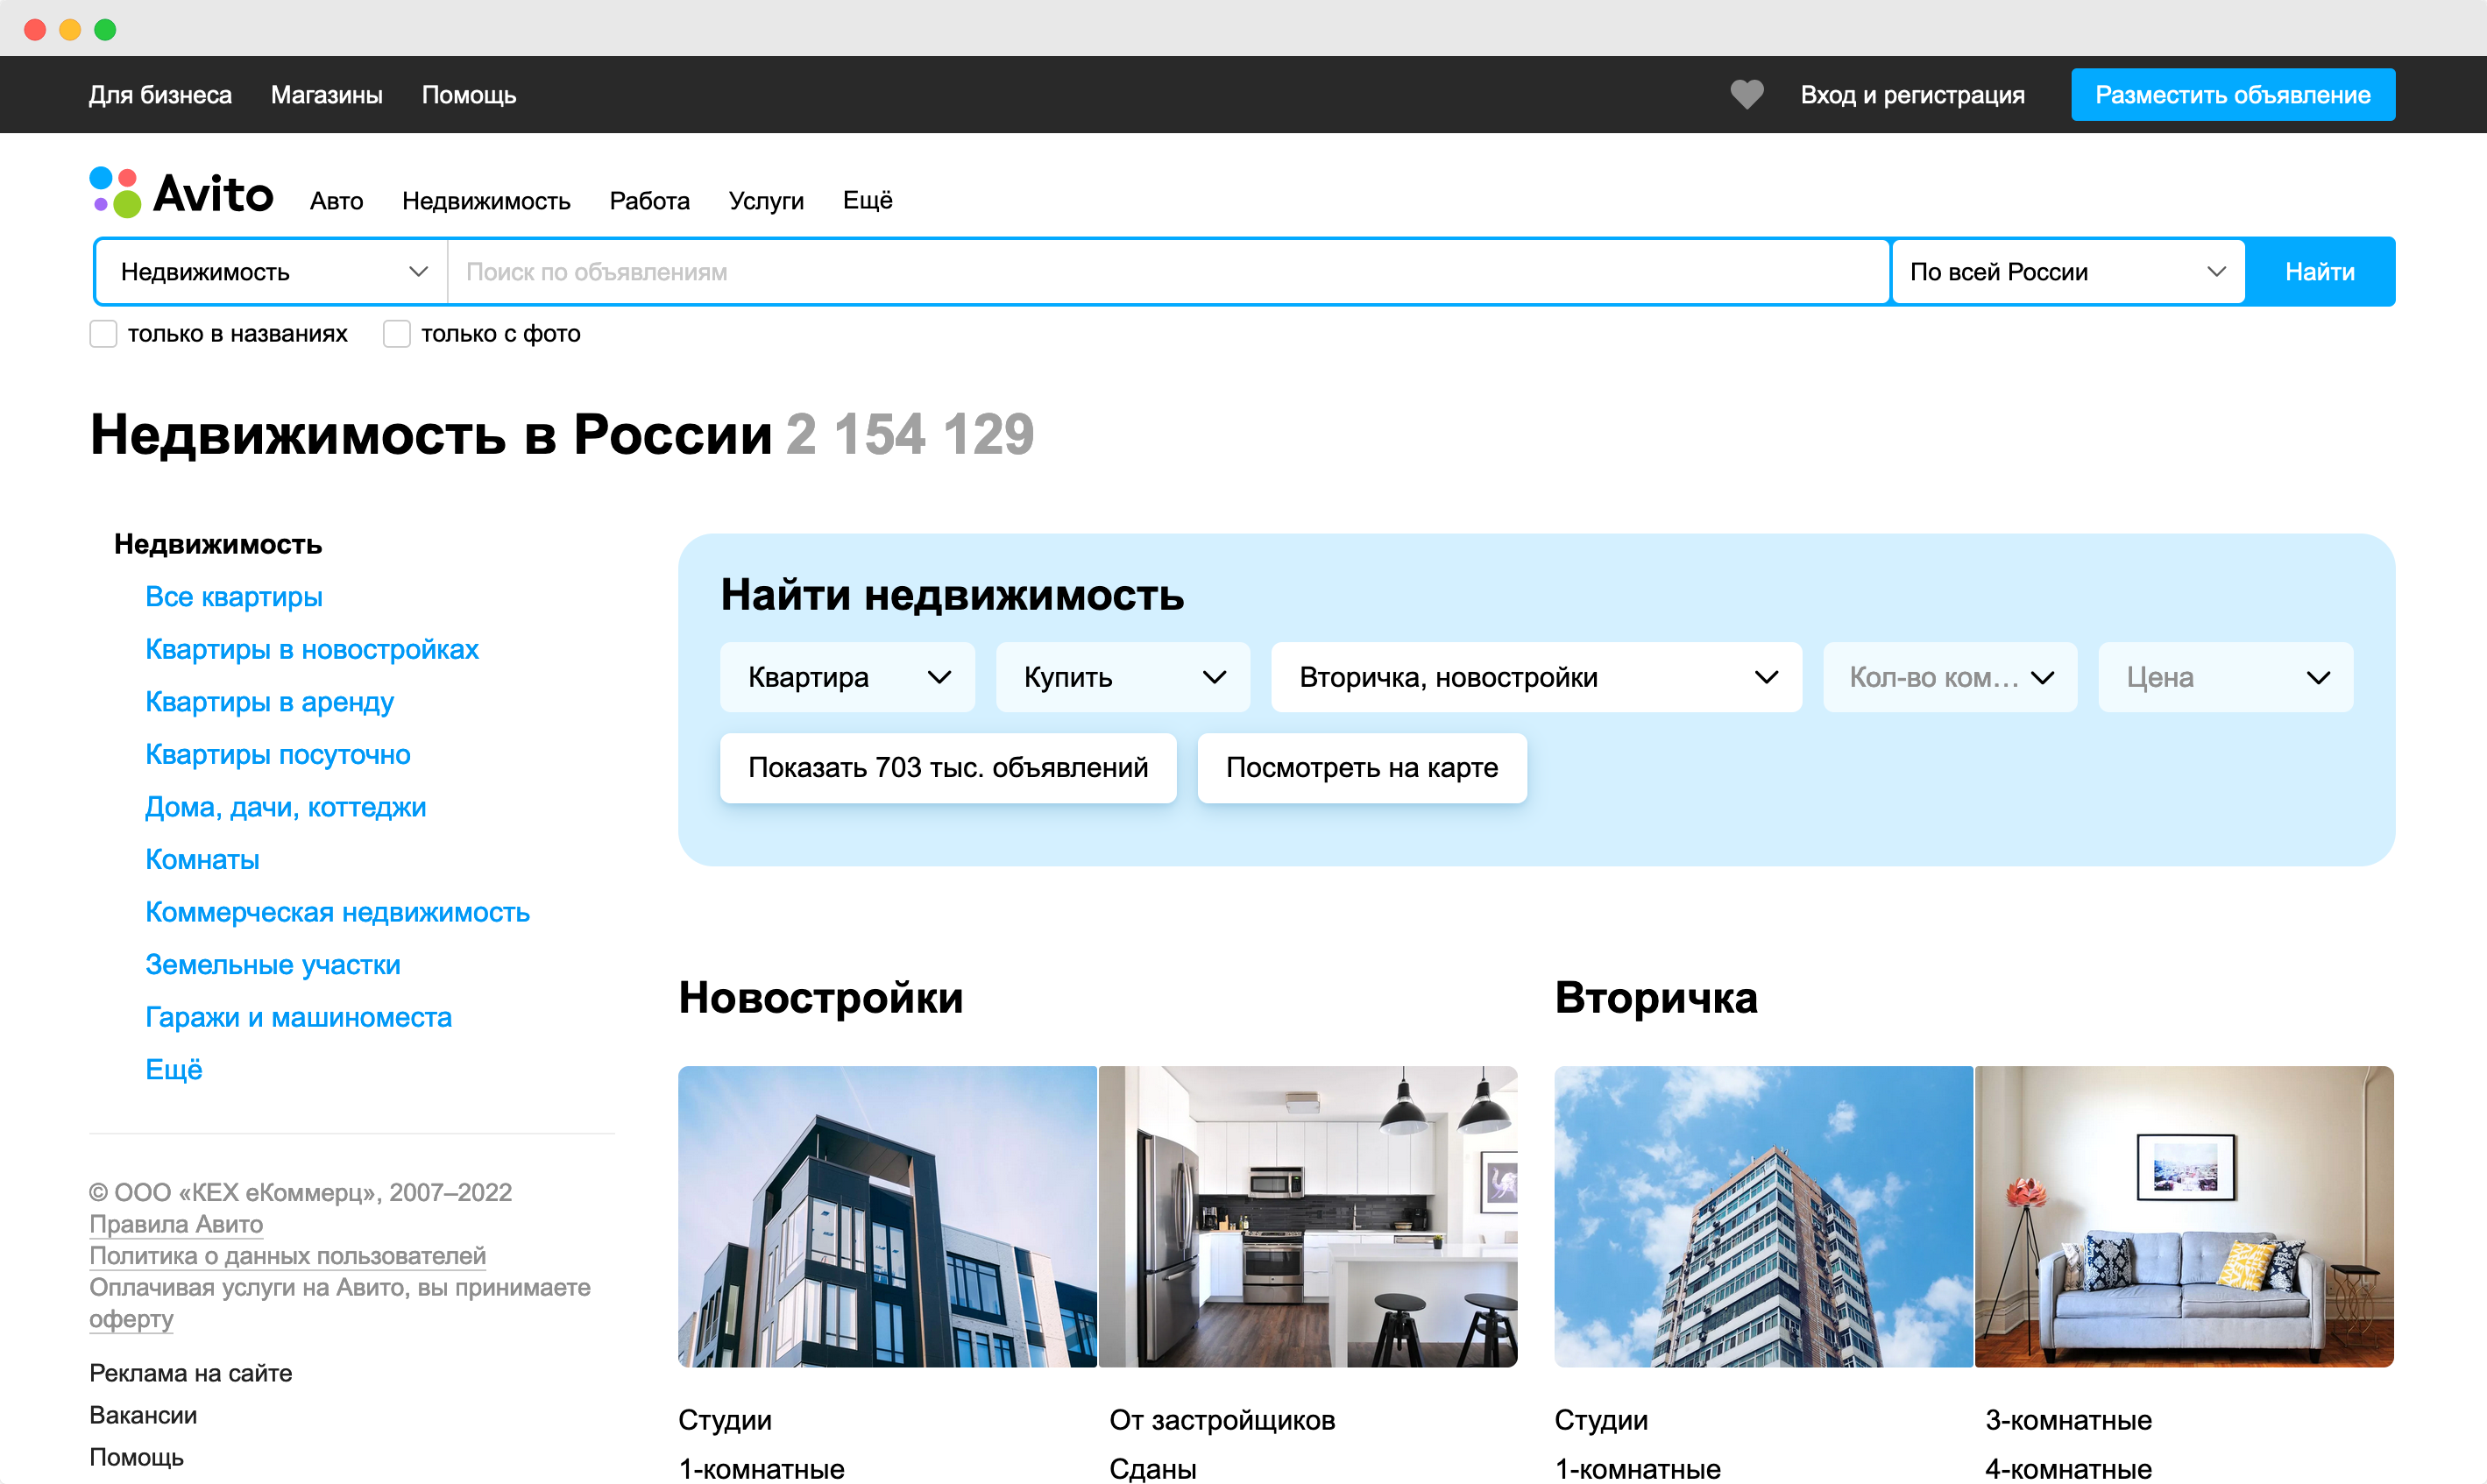 Поиск отелей. Поиск отелей по всему миру. Поиск отелей в России. Сайты для поиска отелей в России.